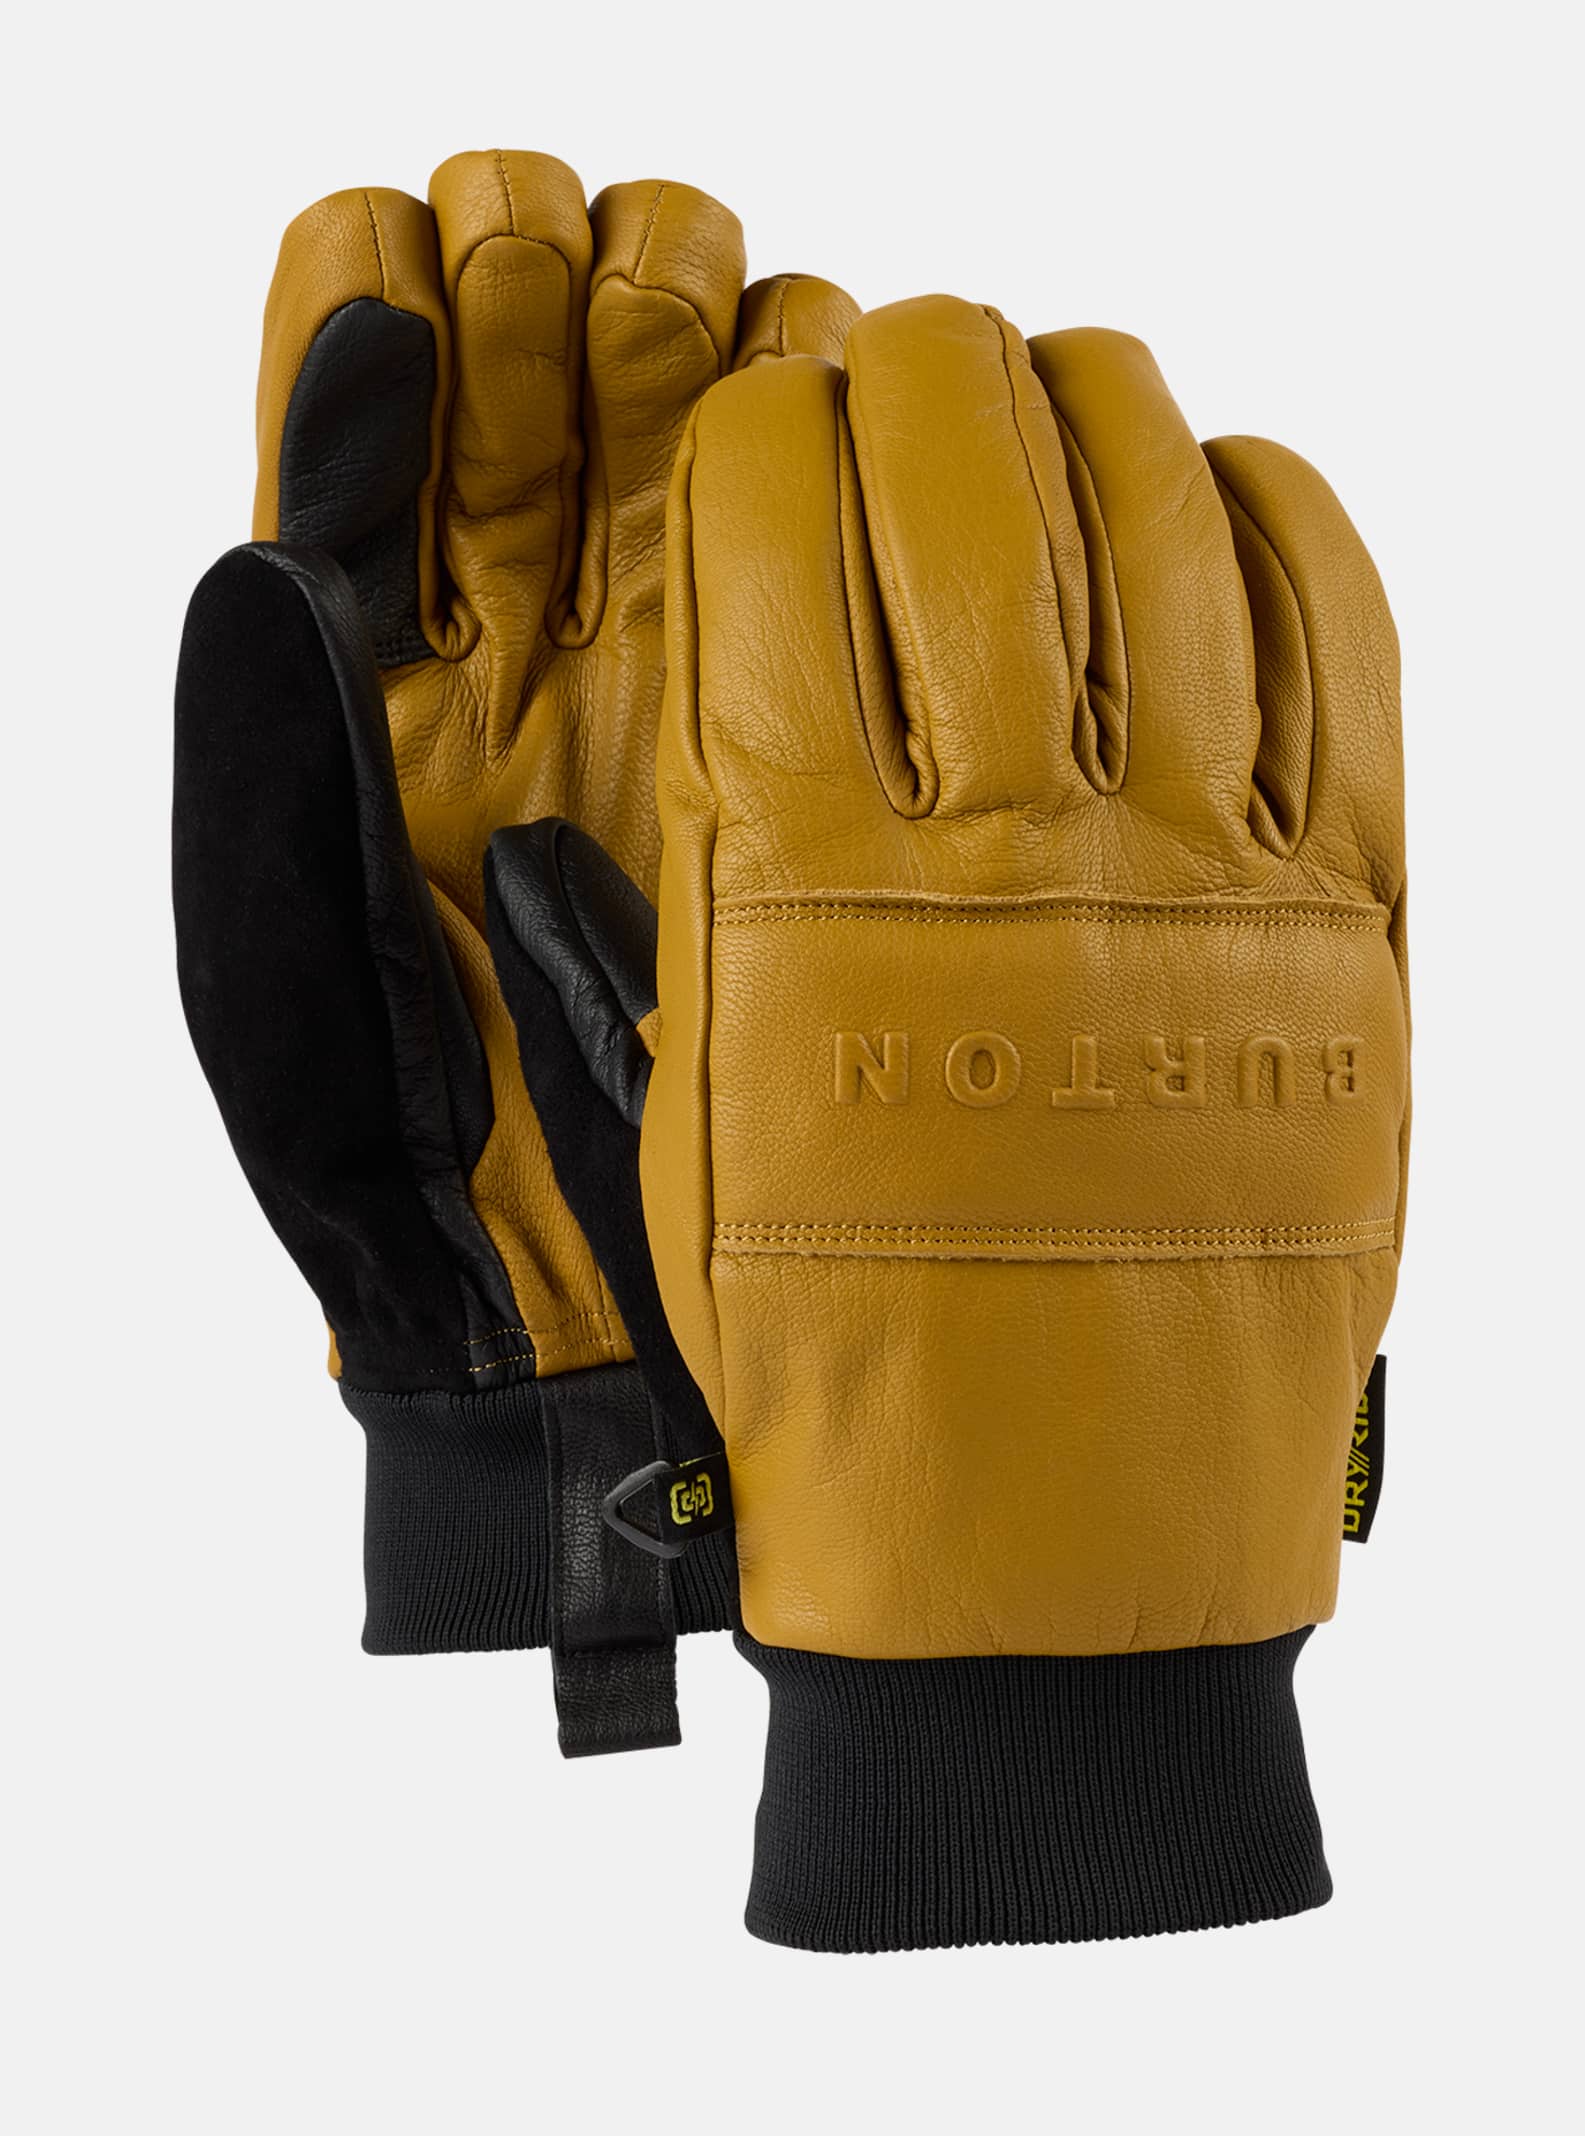 Men's Gloves & Mittens | Burton Snowboards ES